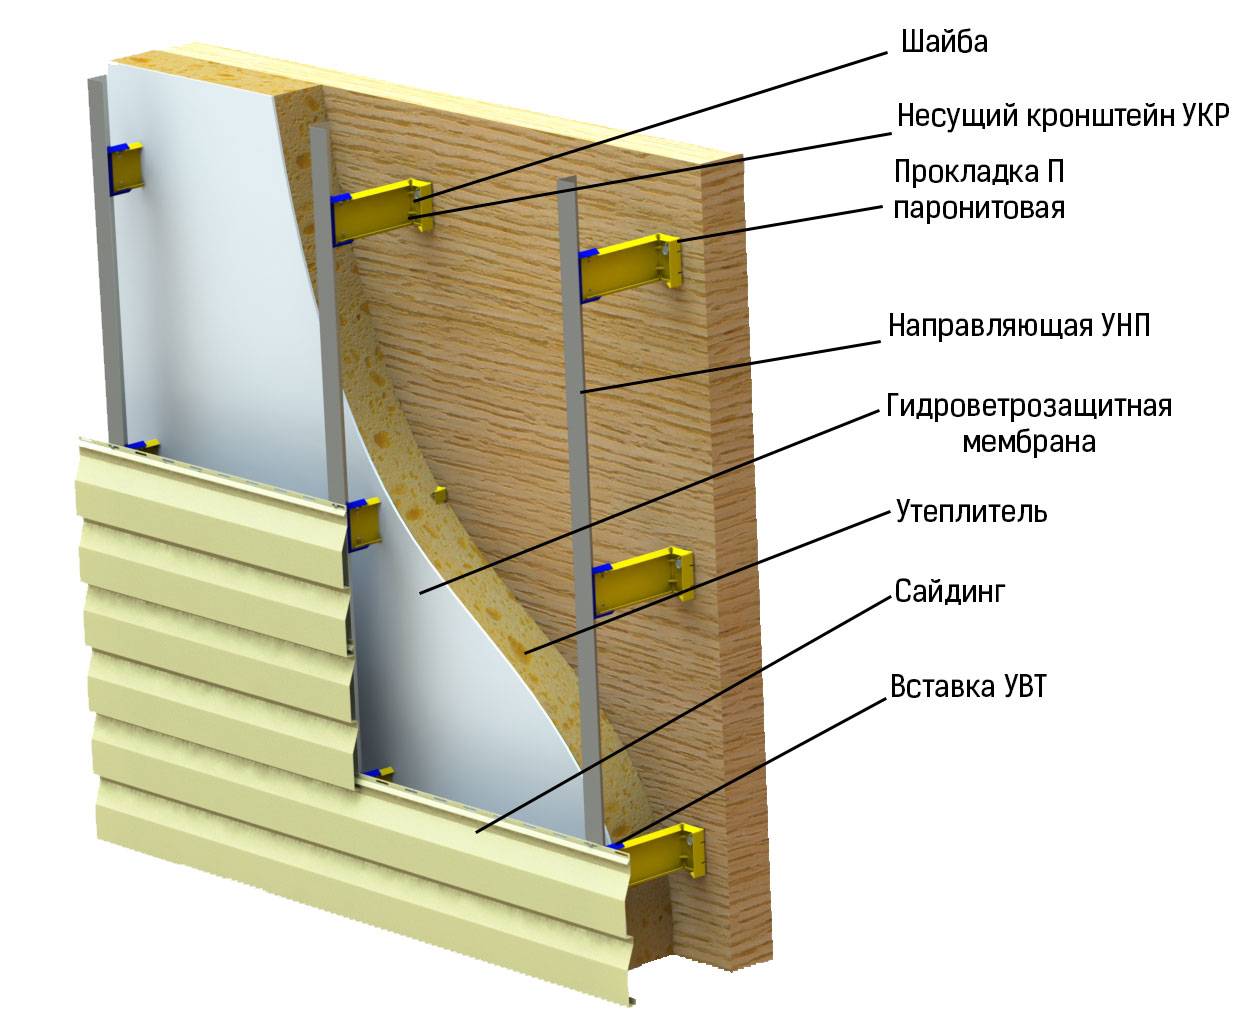 Как утеплить деревянный дом снаружи под сайдинг: выбор технологии и материалов